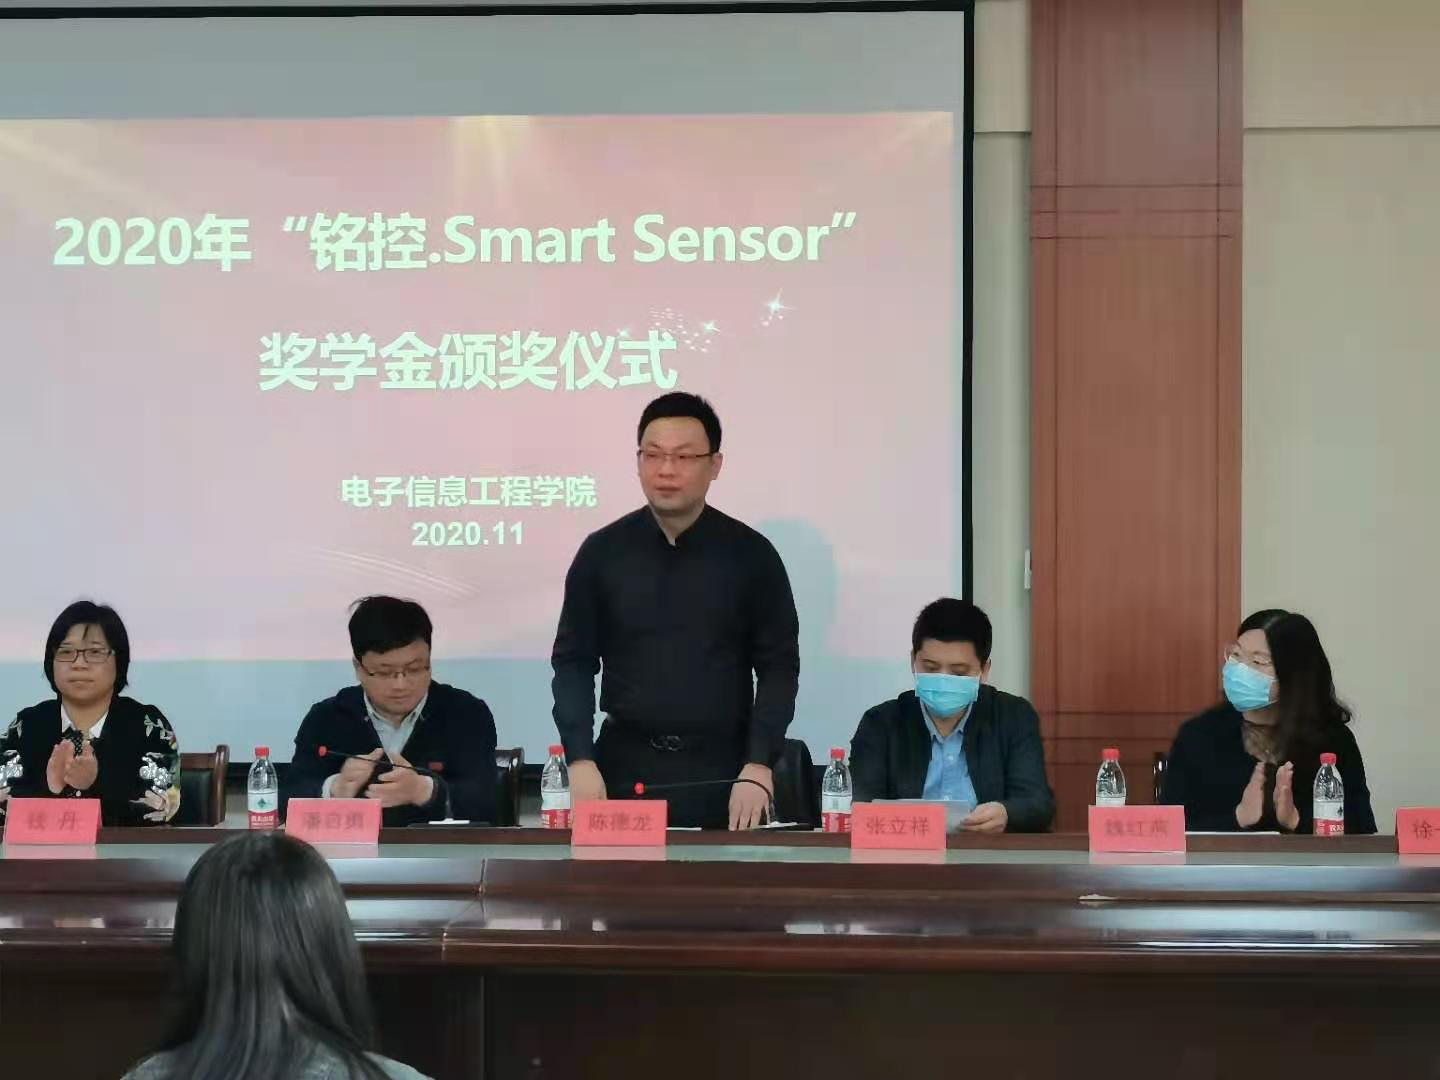 上海铭控 第二届“铭控Smart Sensor”奖学金颁奖典礼WM谢幕